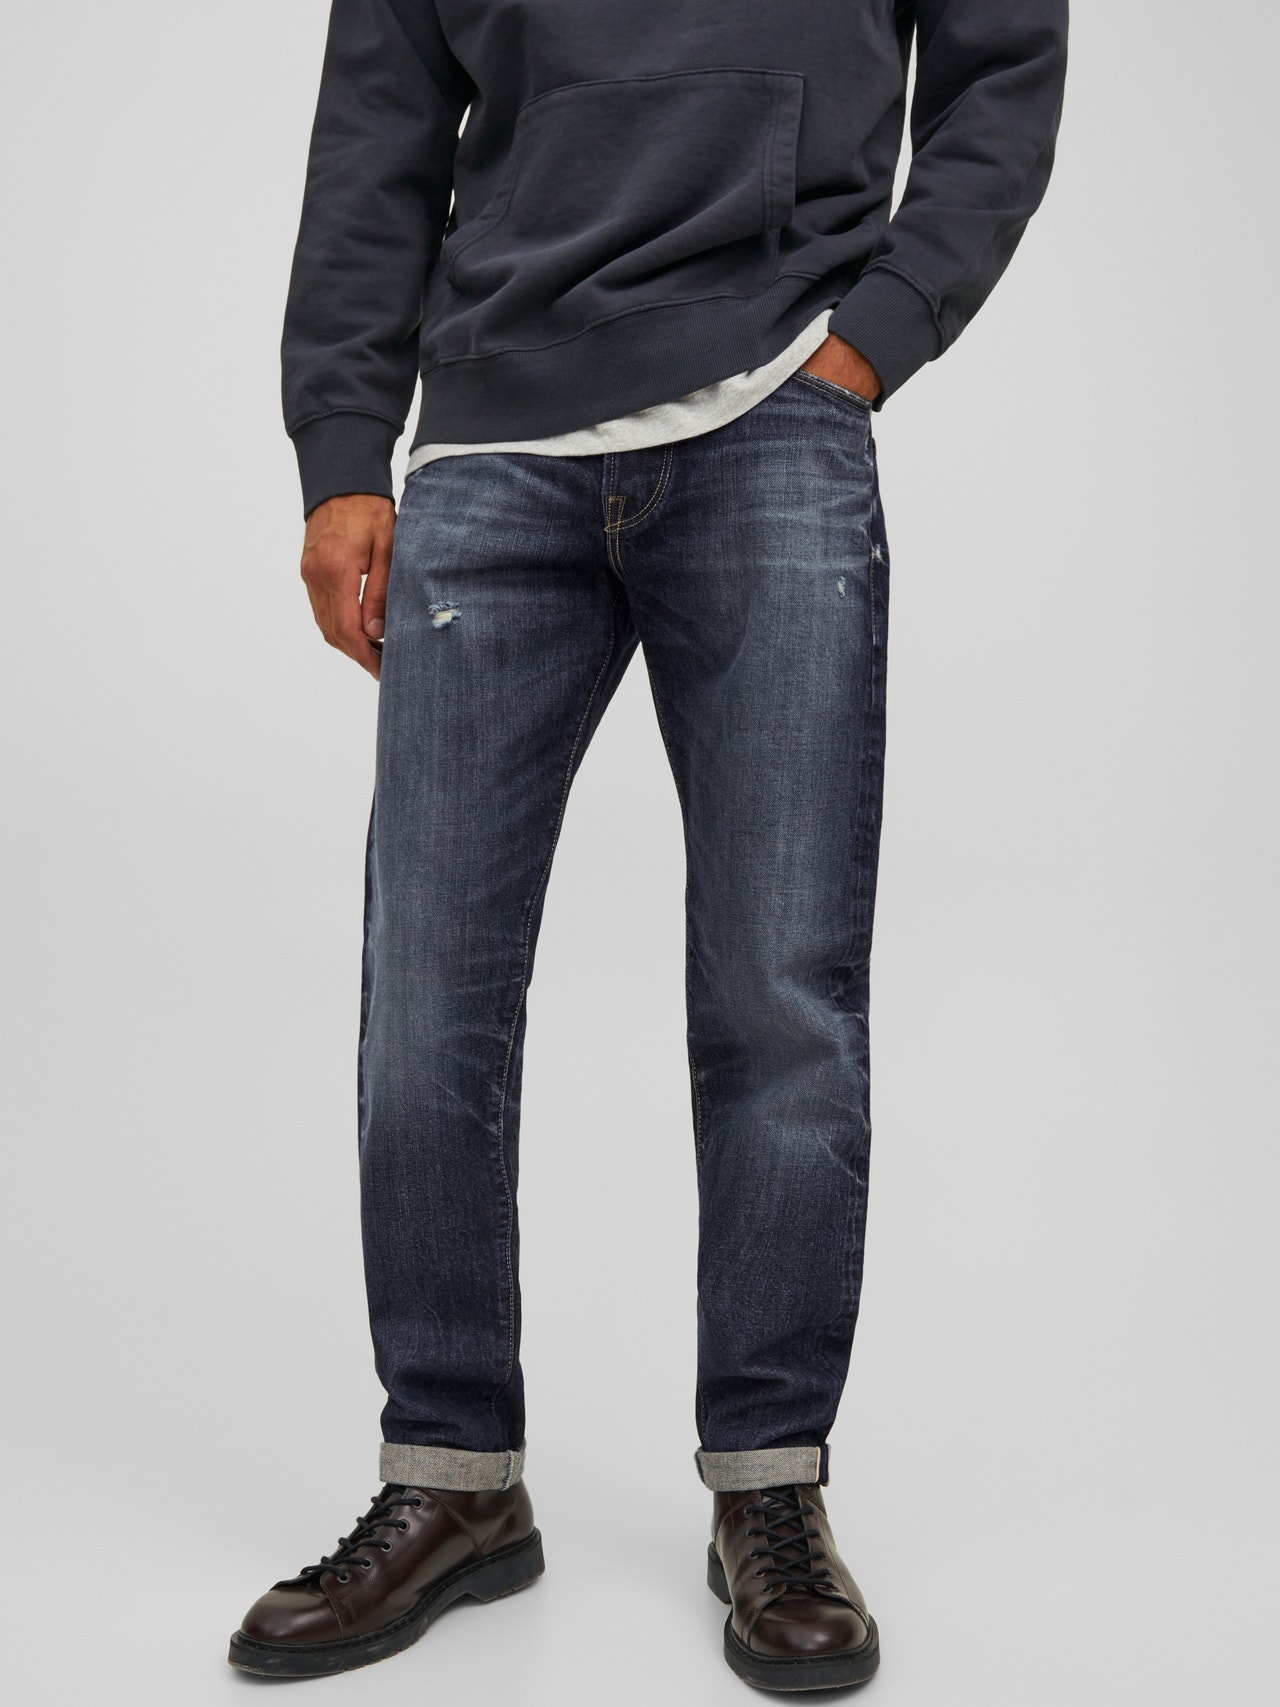 Jack & Jones RDD Royal R249 selvedge Comfort Fit Jeans -Blue Denim - 12185996